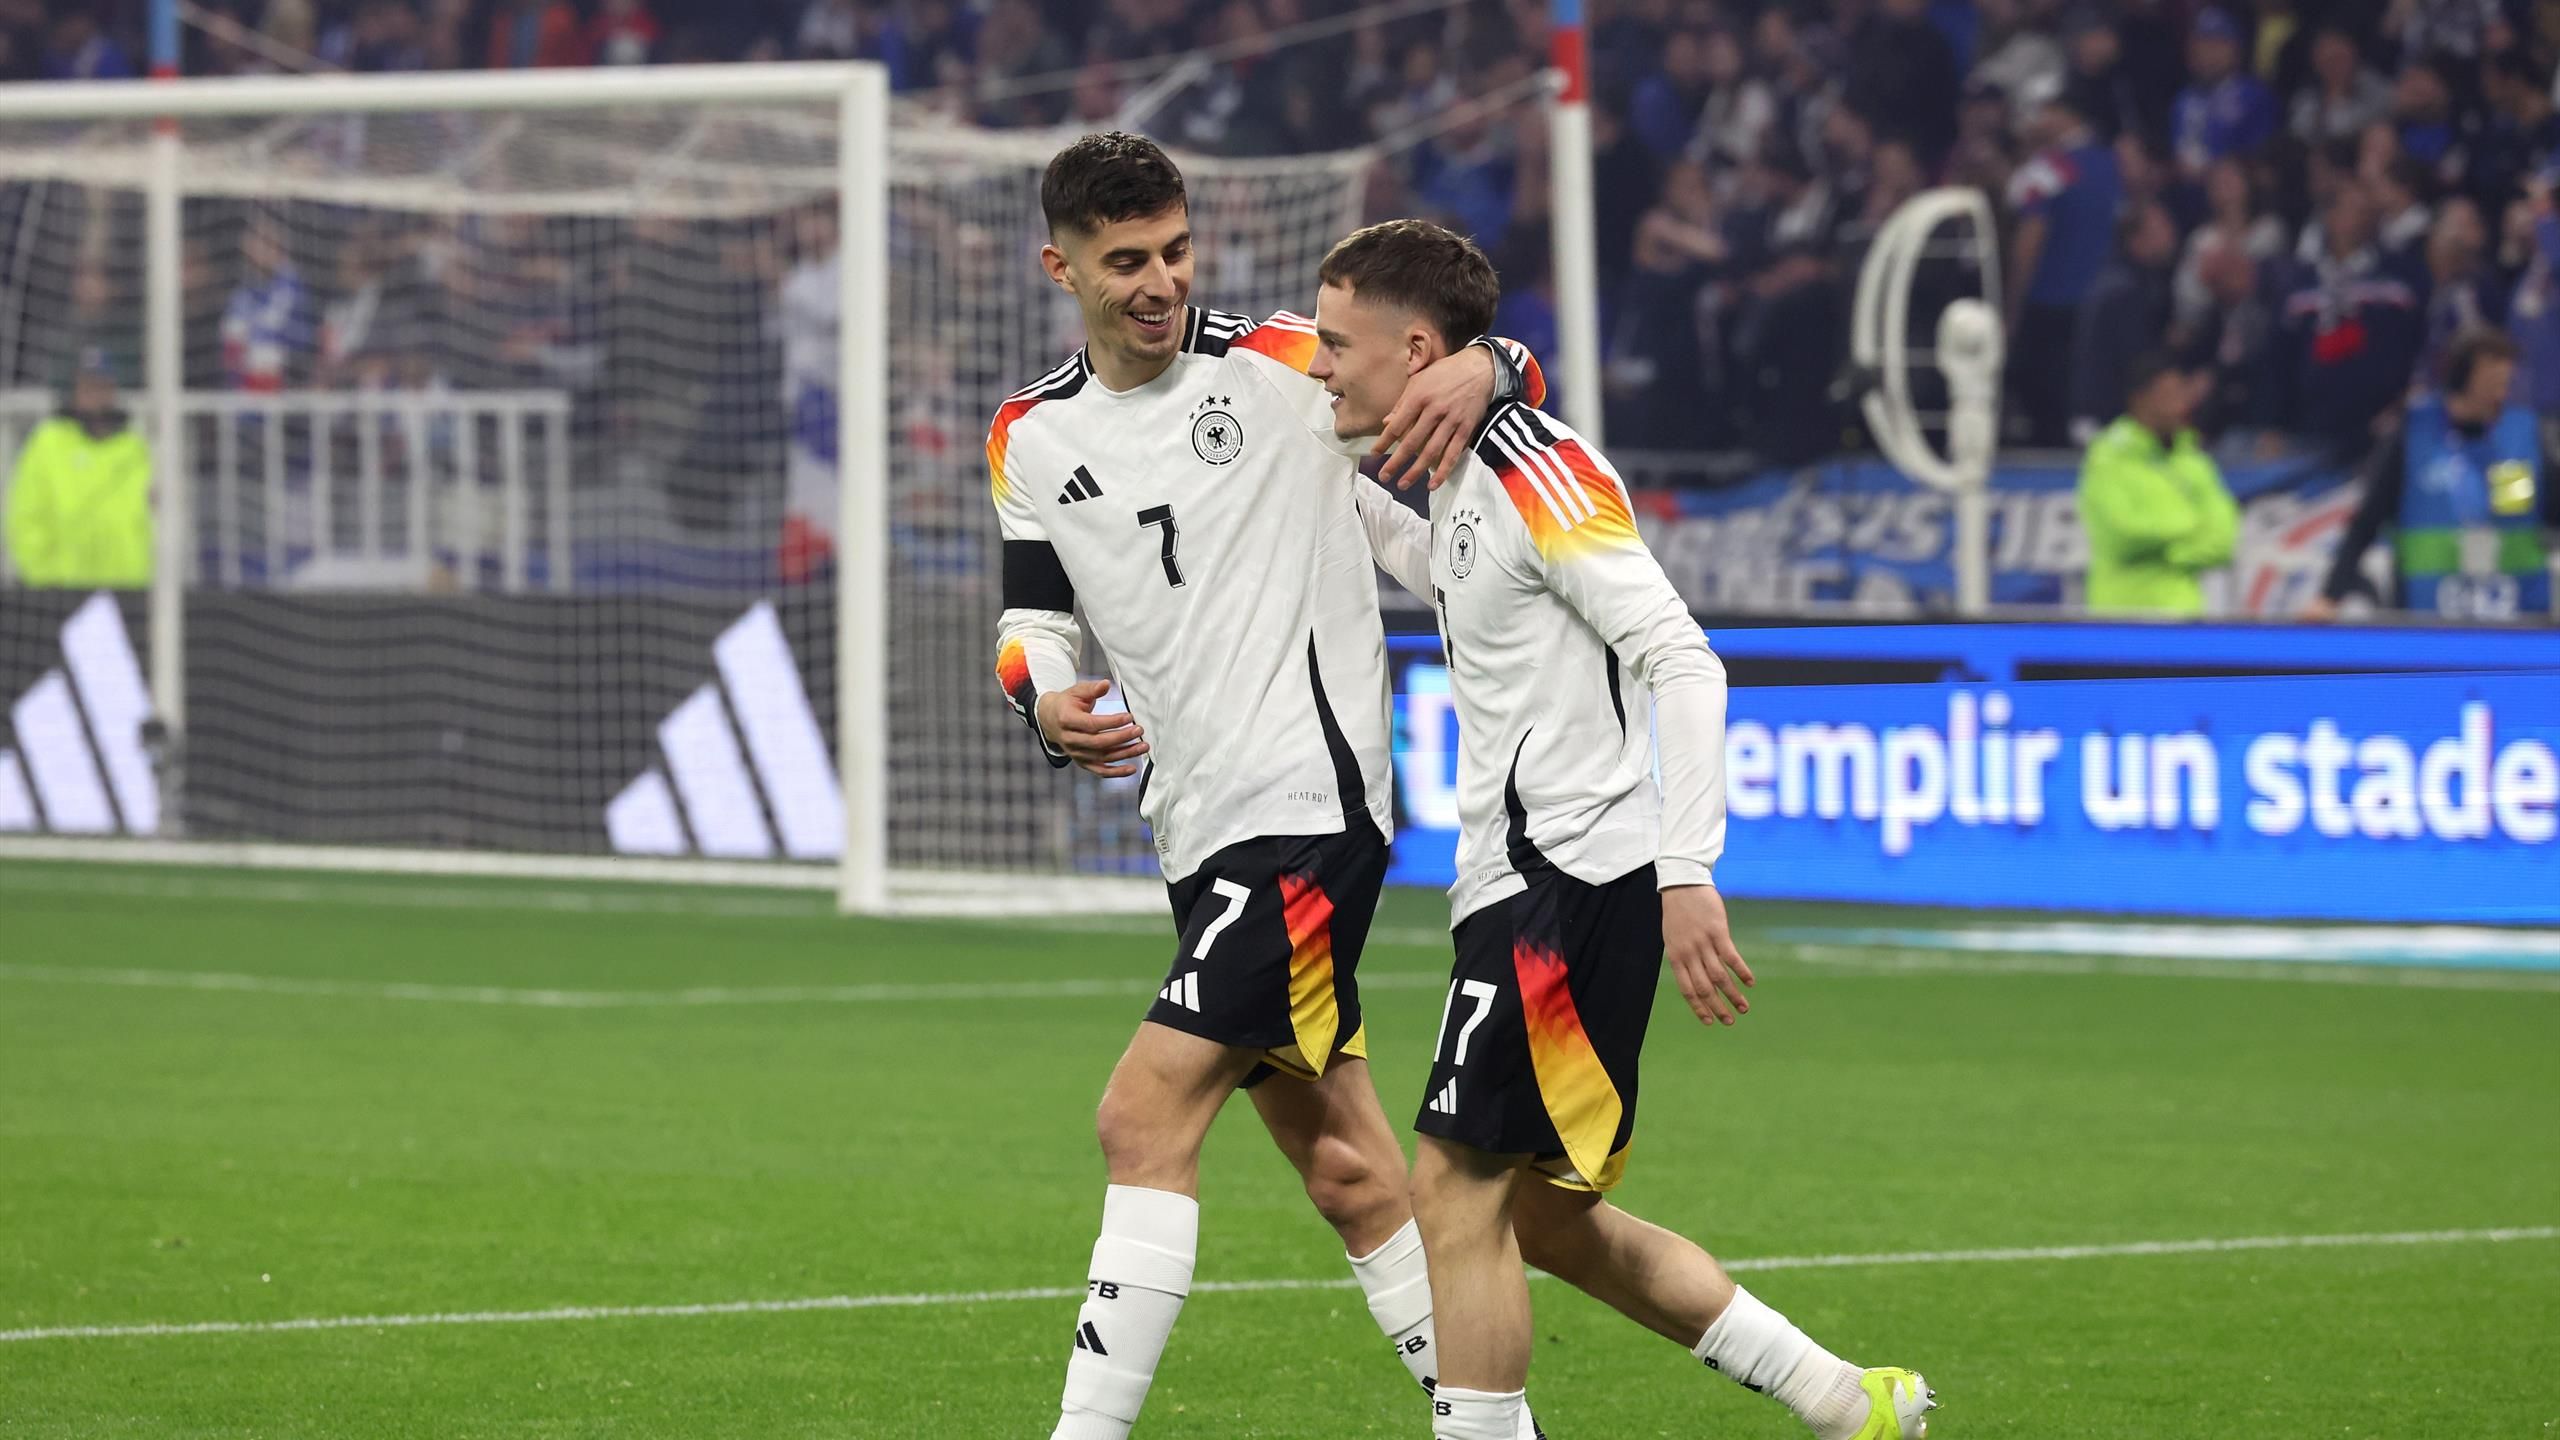 France 0-2 Allemagne : Florian Wirtz marque le premier but en sept secondes et l'équipe de Julian Nagelsmann remporte une victoire clé